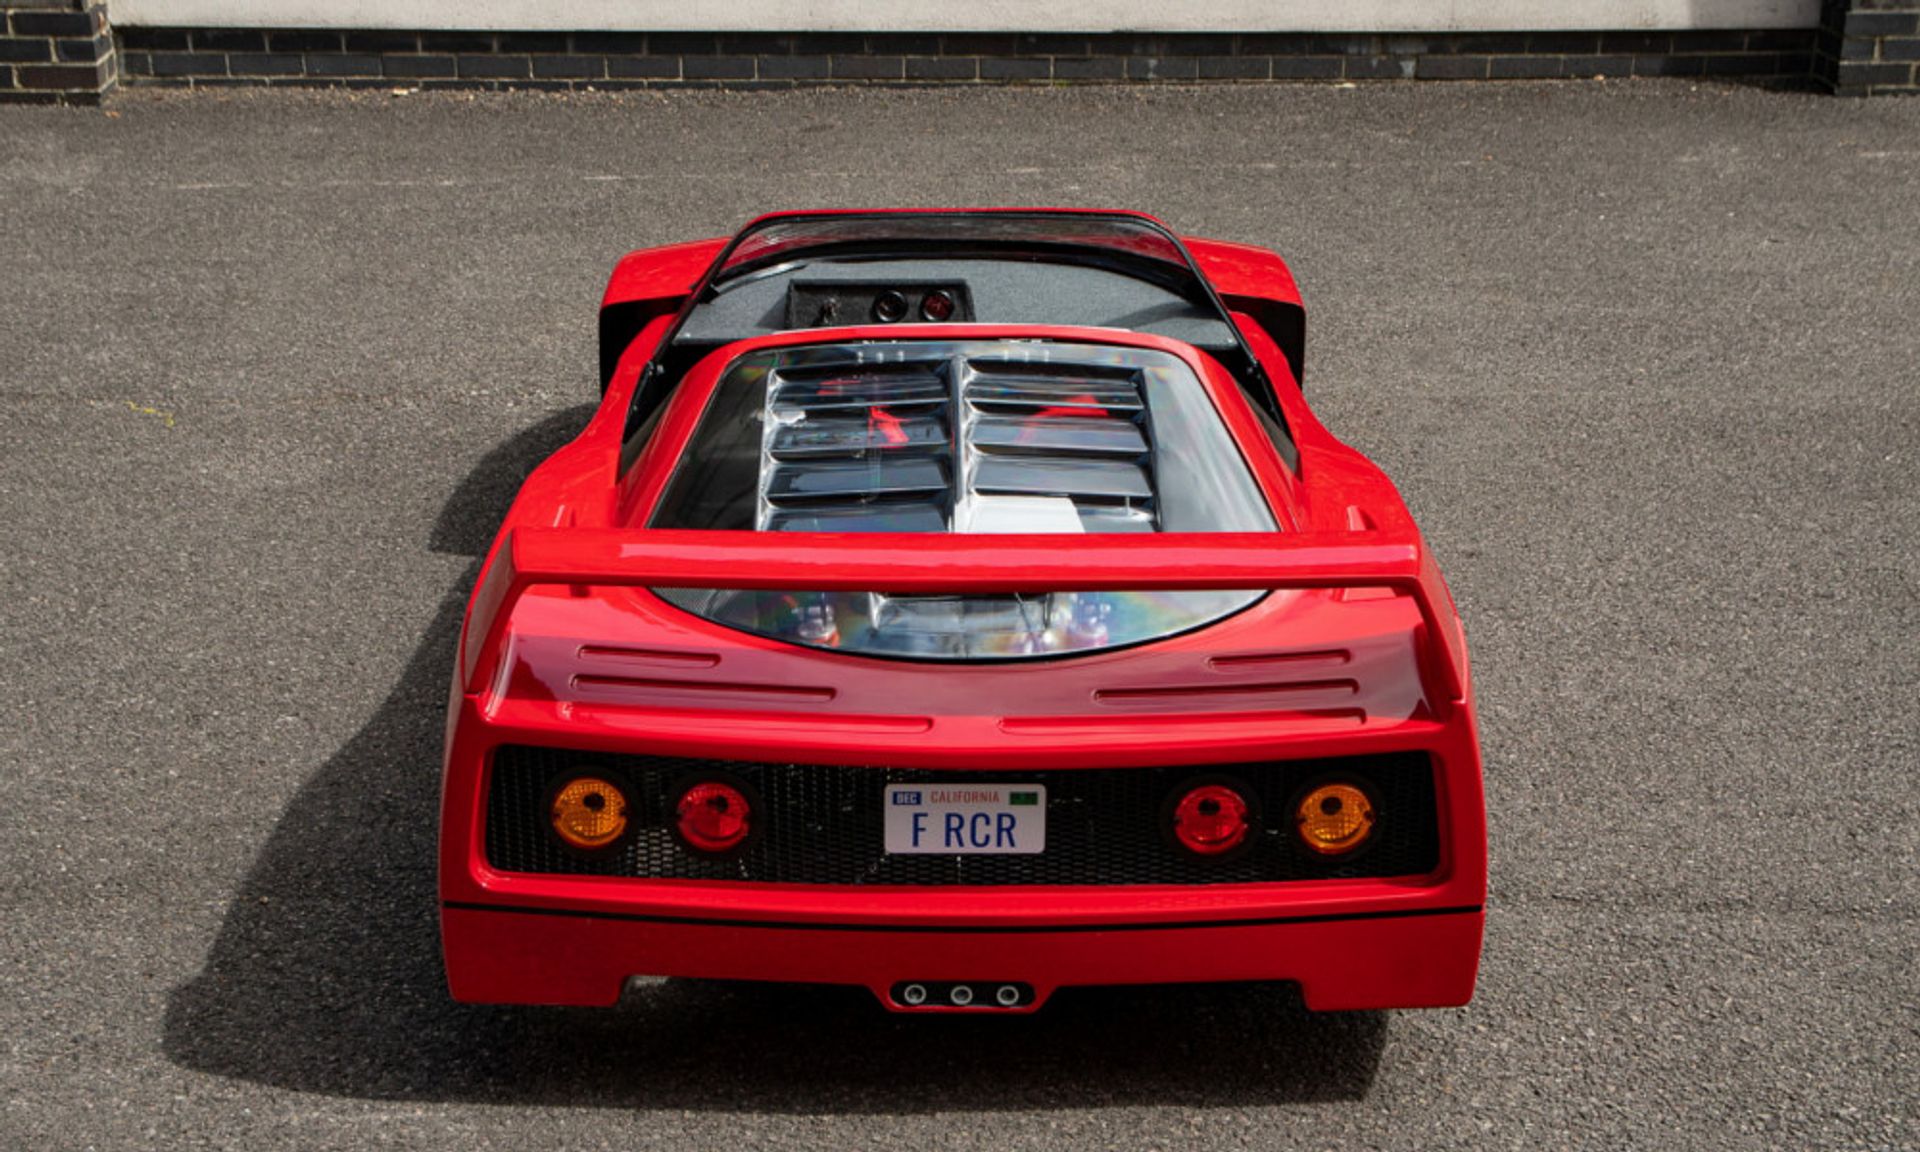 Ferrari kart